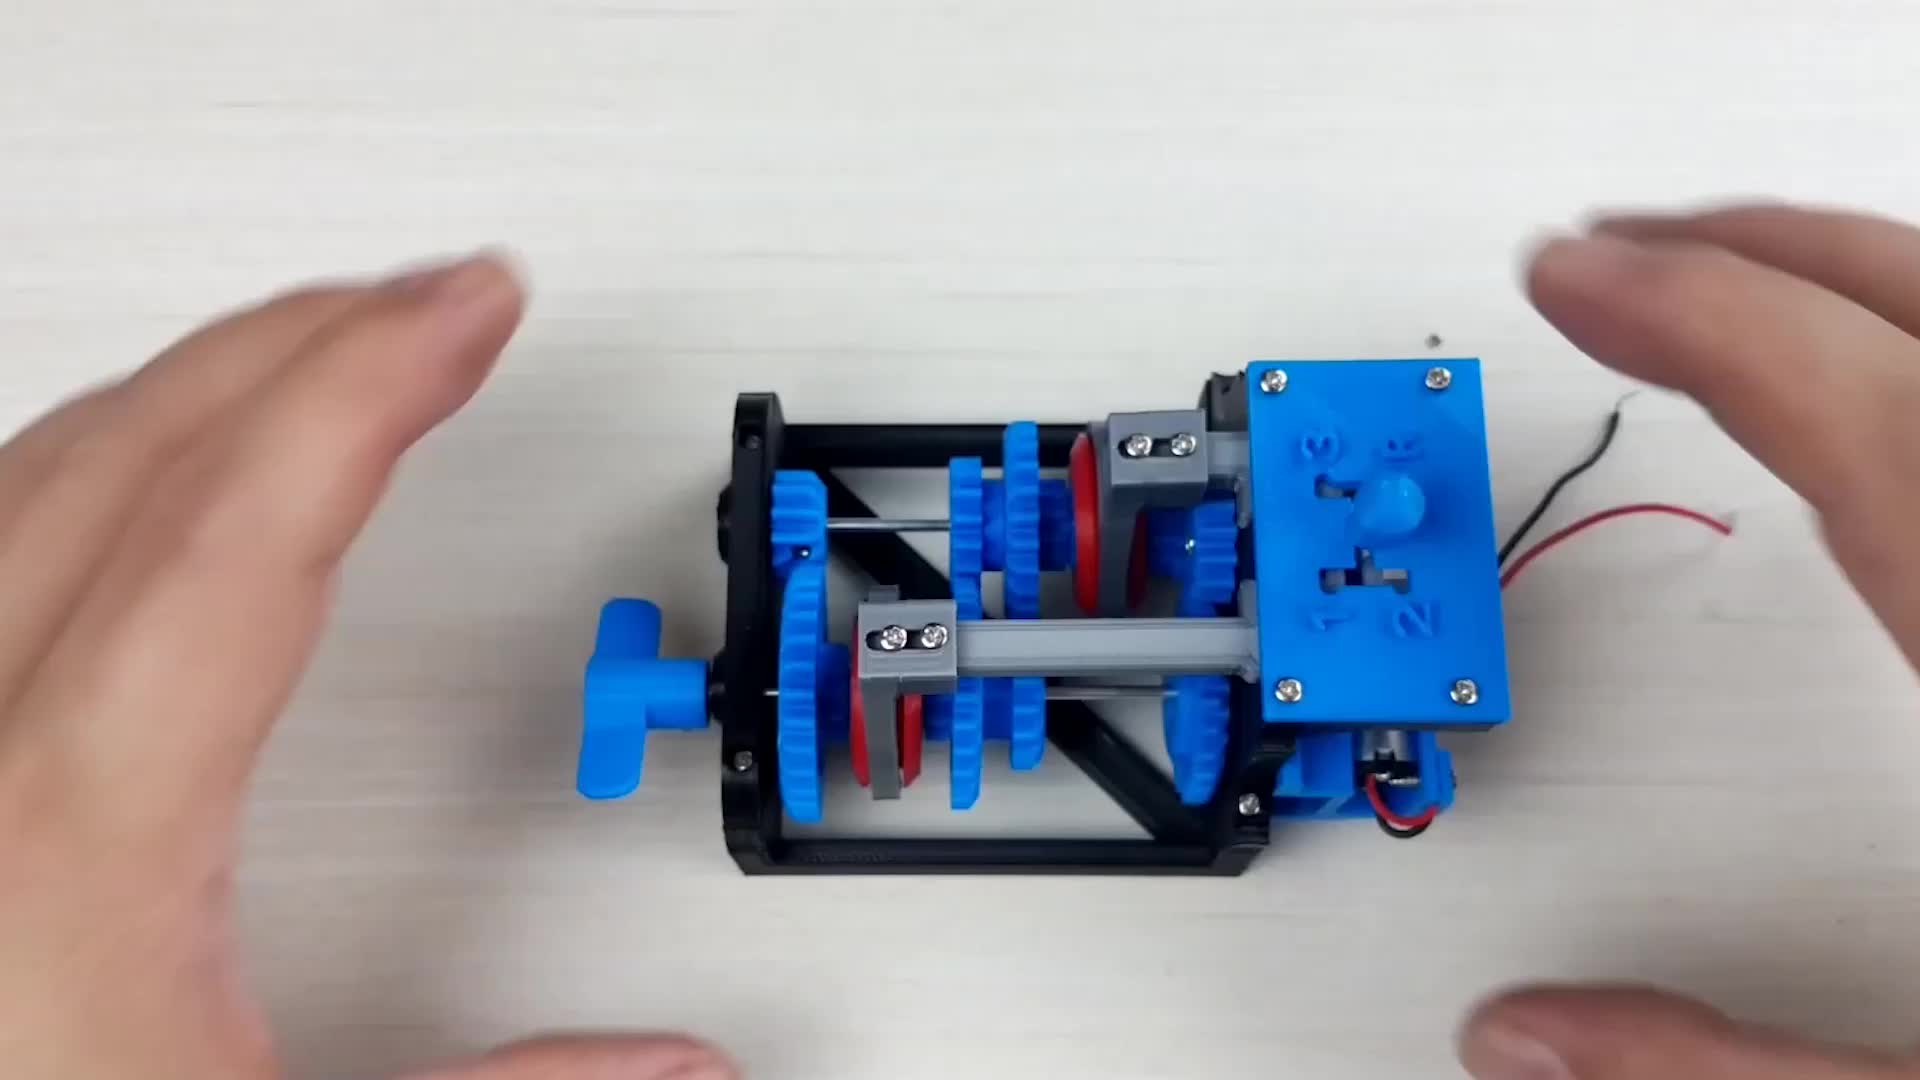 用3D打印机做出一个变速箱模型，看看手动挡汽车的机械原理是什么  #硬核拆解 